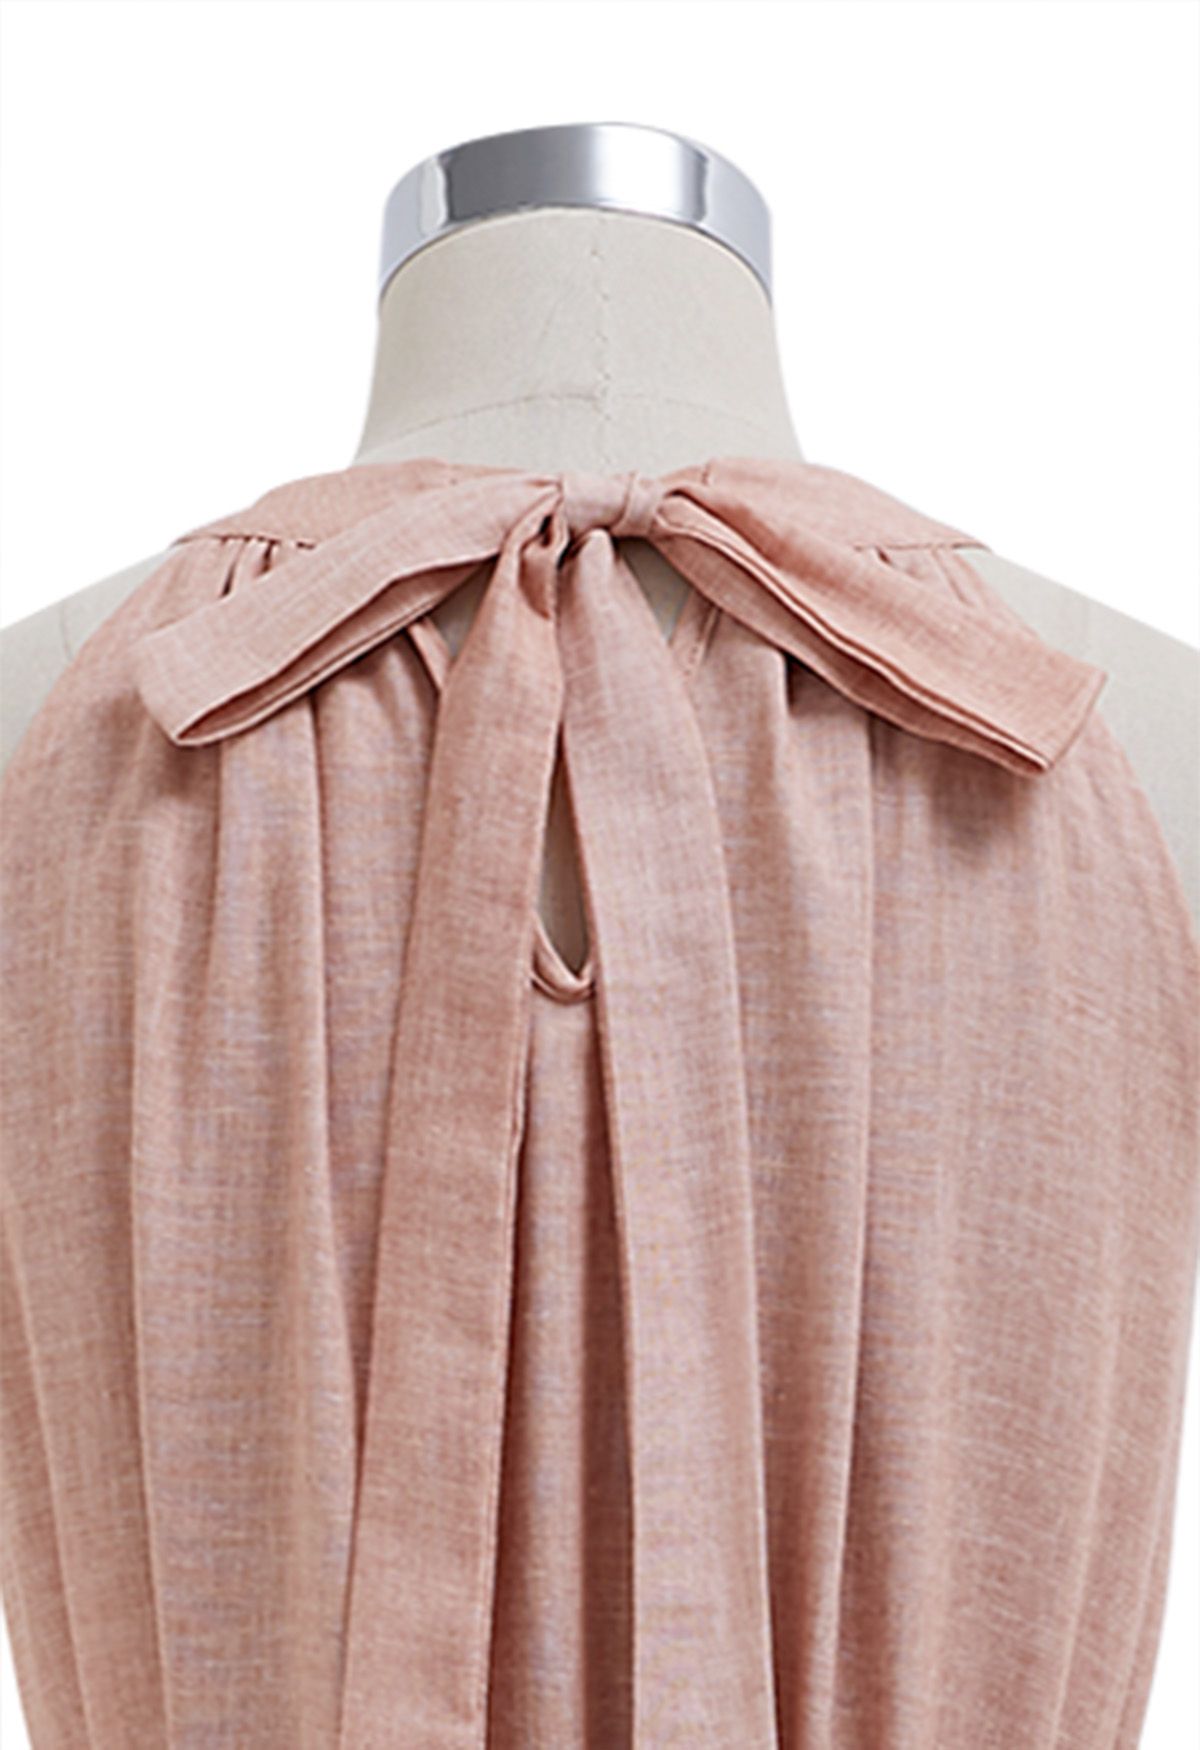 Beaded Tie-Neck Halter Dress in Pink